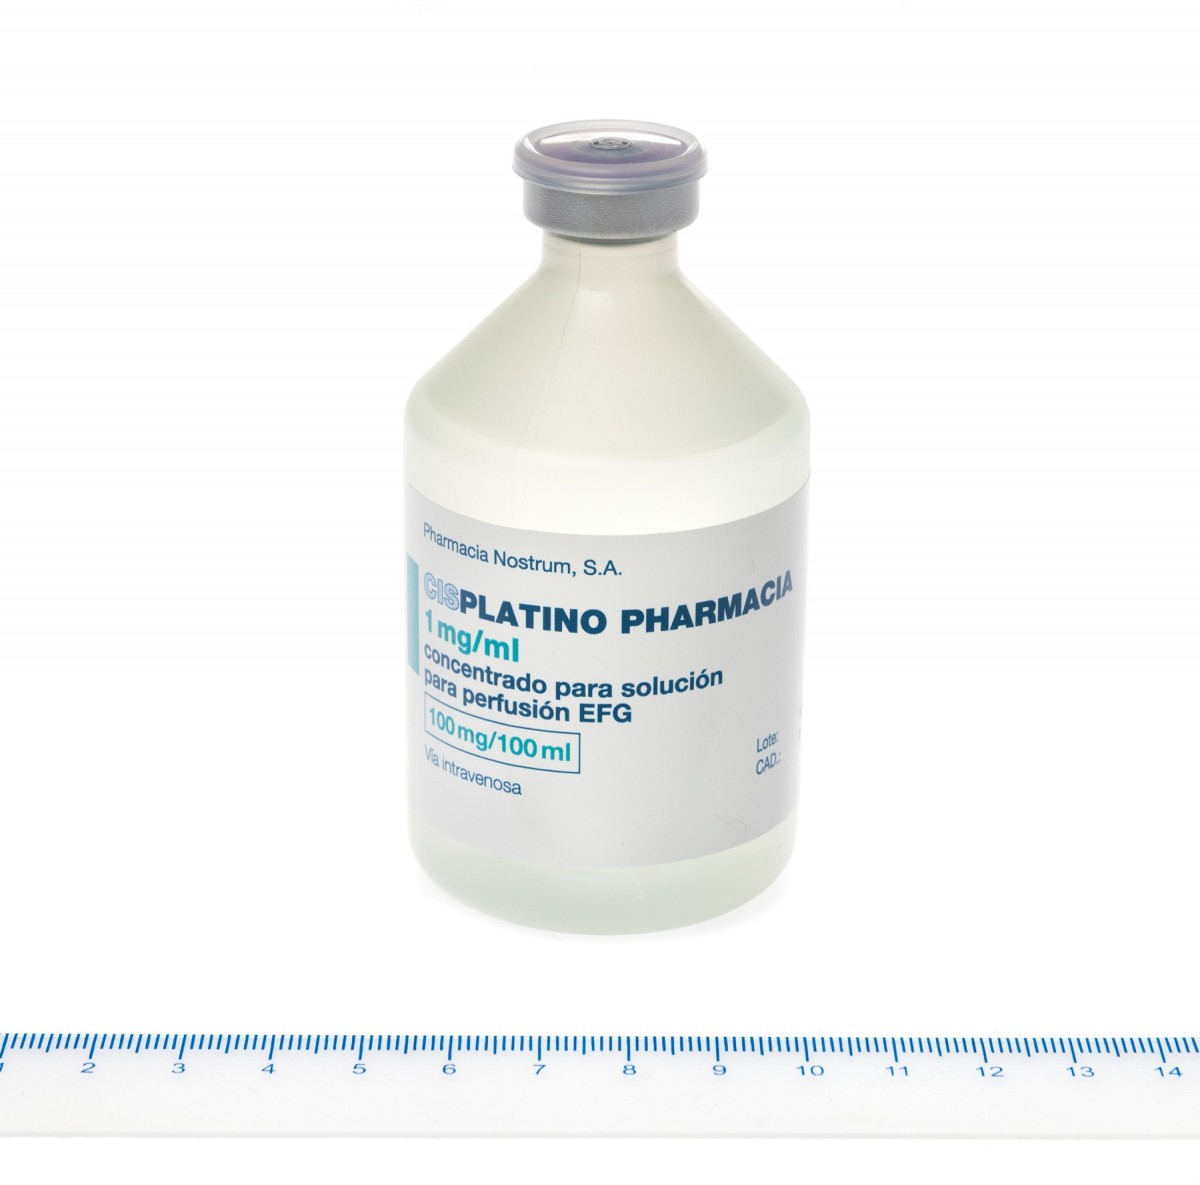 CISPLATINO PHARMACIA 1 mg/ml CONCENTRADO PARA SOLUCION PARA PERFUSION EFG , 1 vial de 100 ml fotografía de la forma farmacéutica.